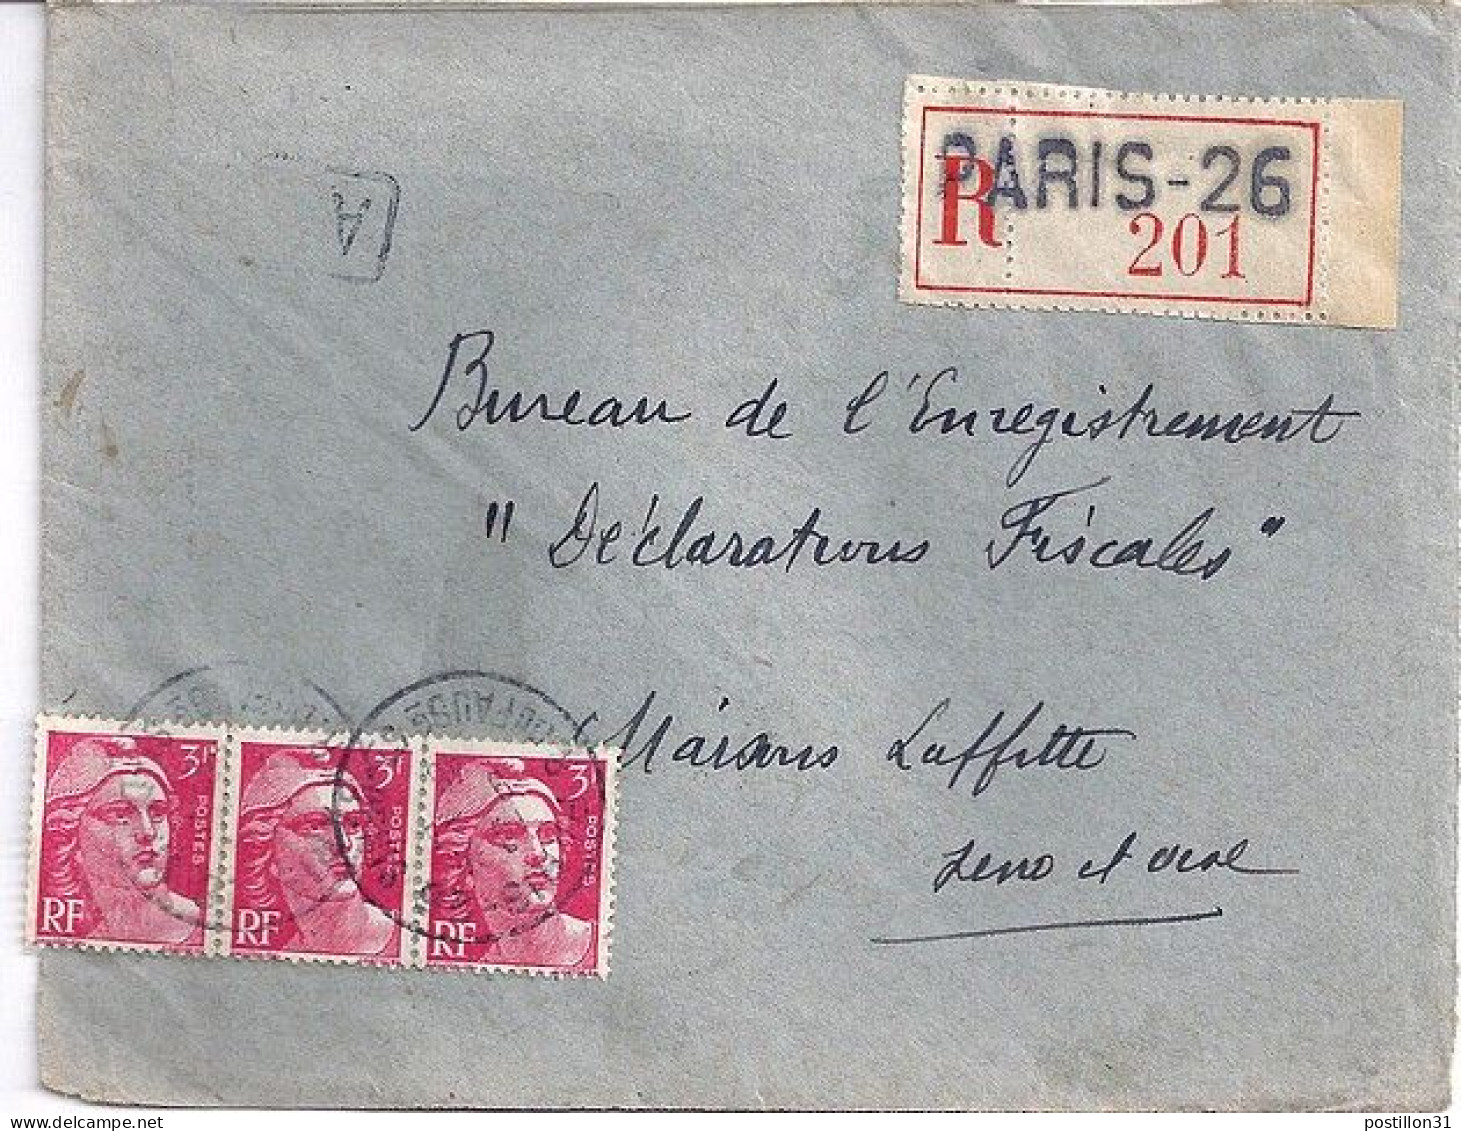 GANDON N° 716x3 S/DEVANT DE L.REC. DE PARIS 26 / 9.4.46 - 1945-54 Marianna Di Gandon